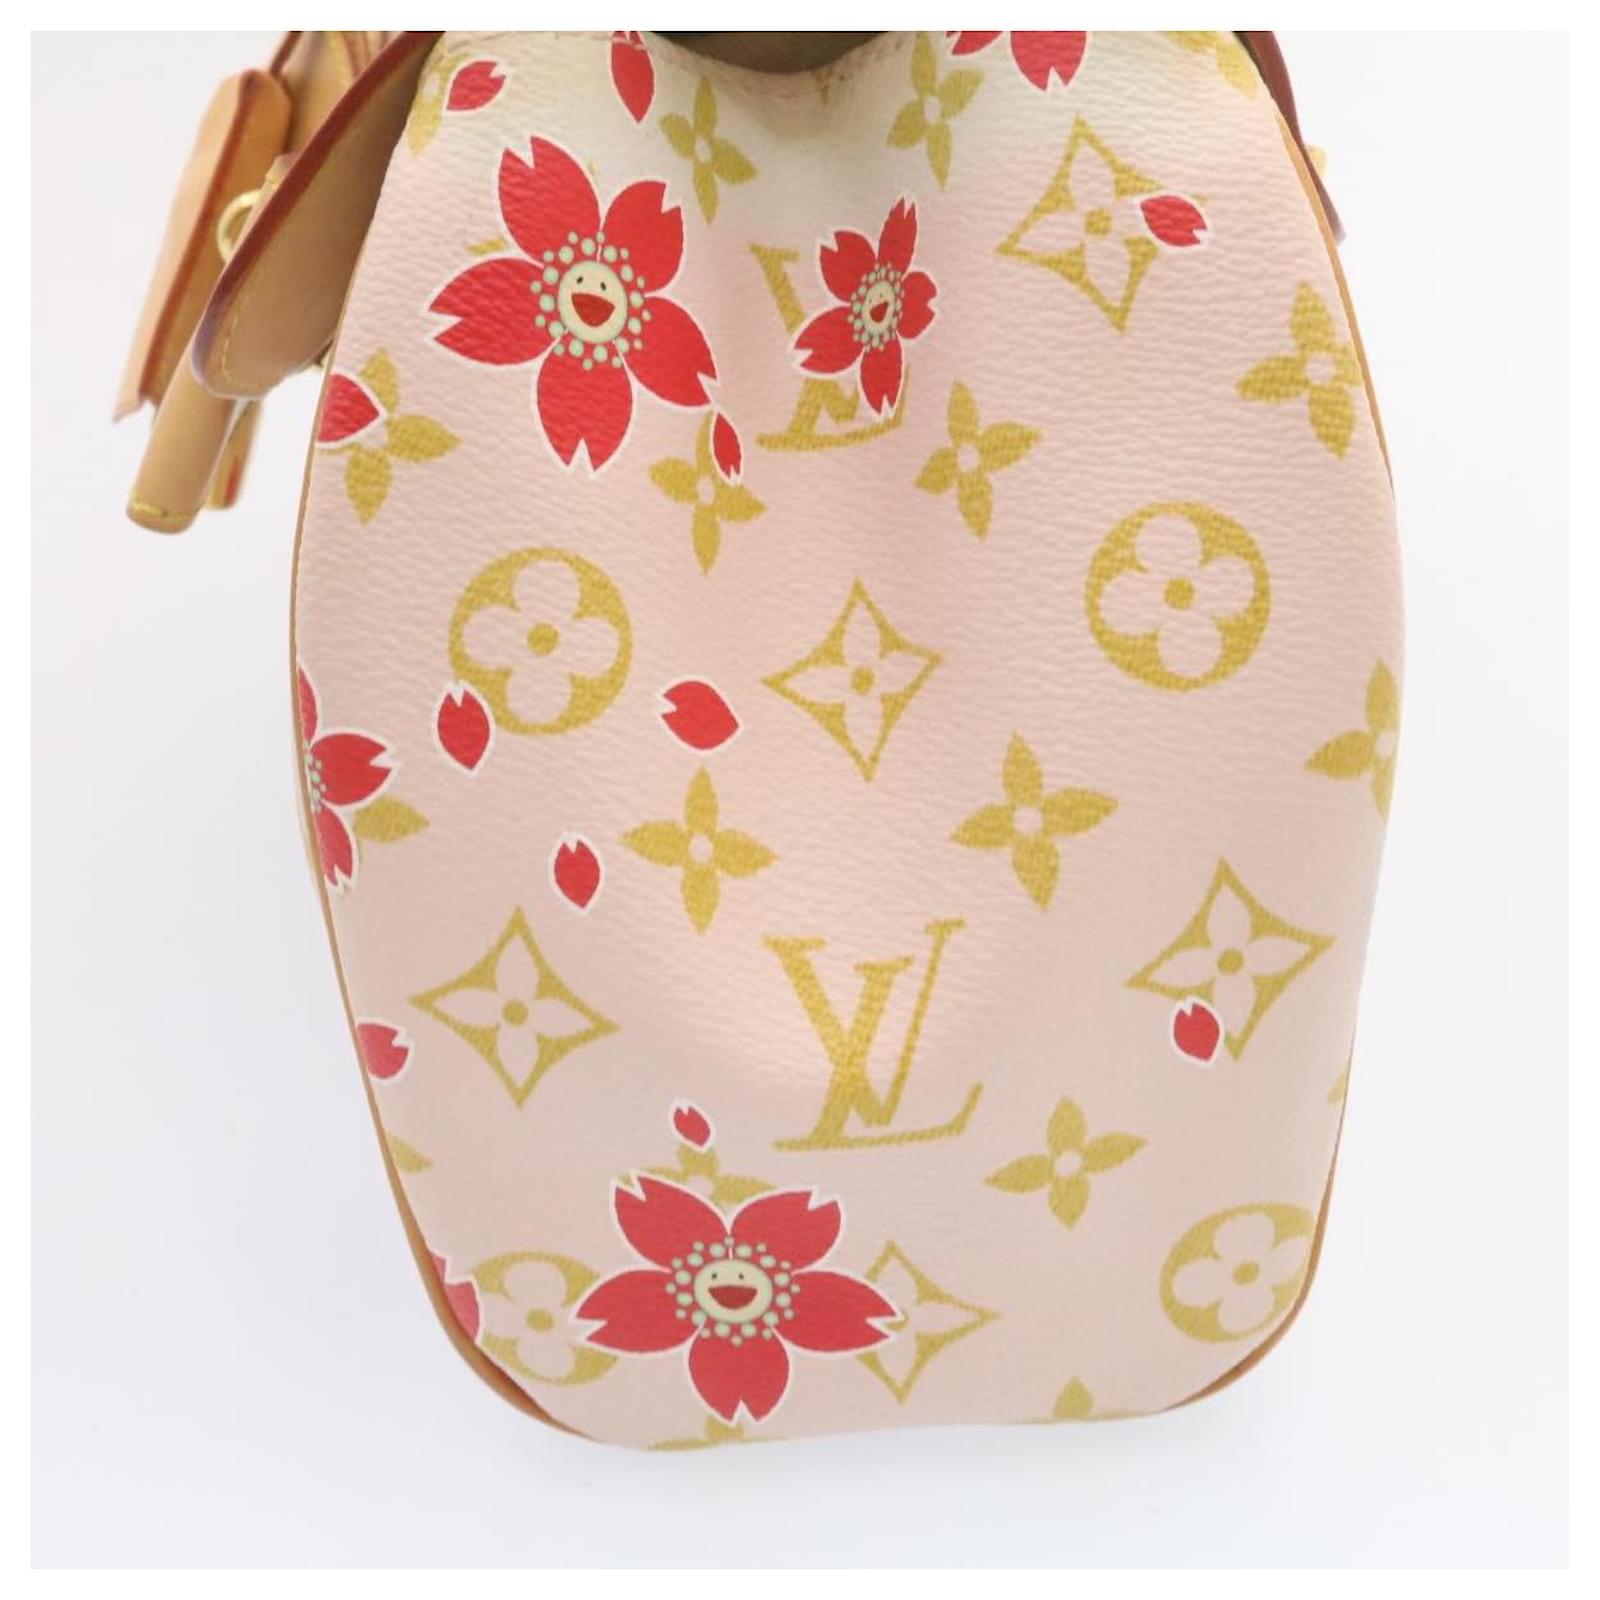 Louis Vuitton Monogram Cherry Blossom Sac Retro Bag